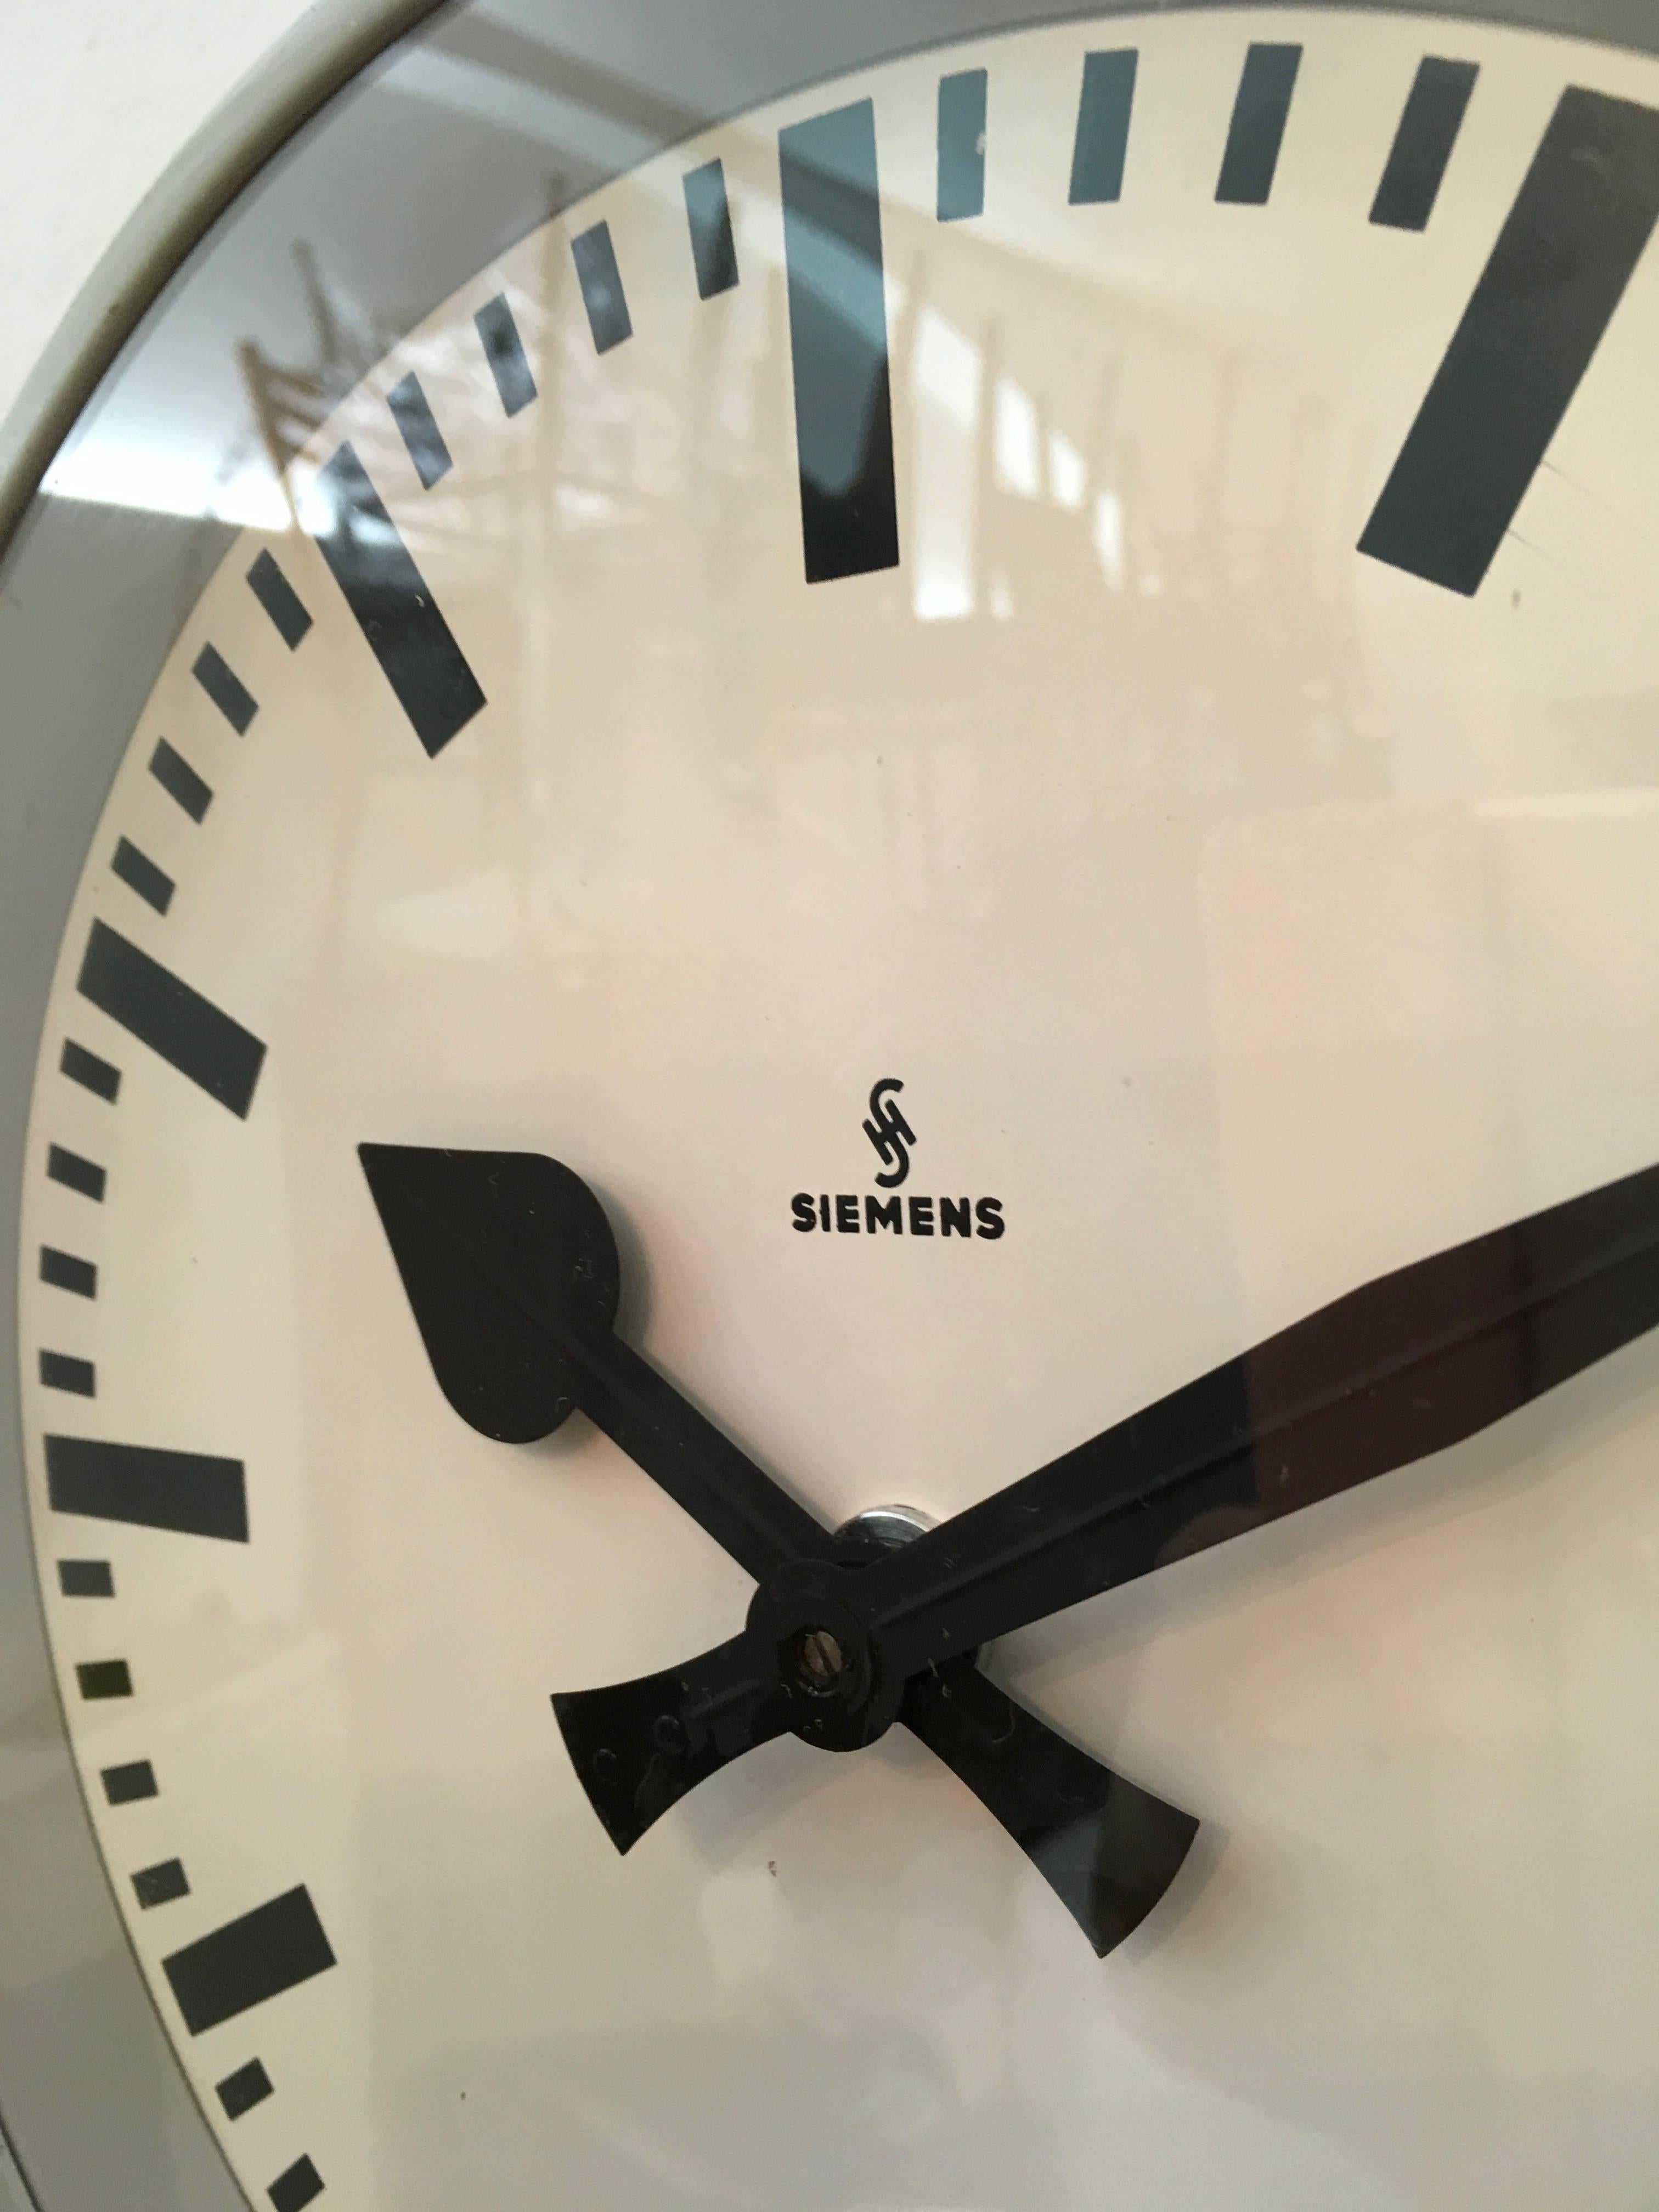 Industrial Siemens Factory or Workshop Wall Clock